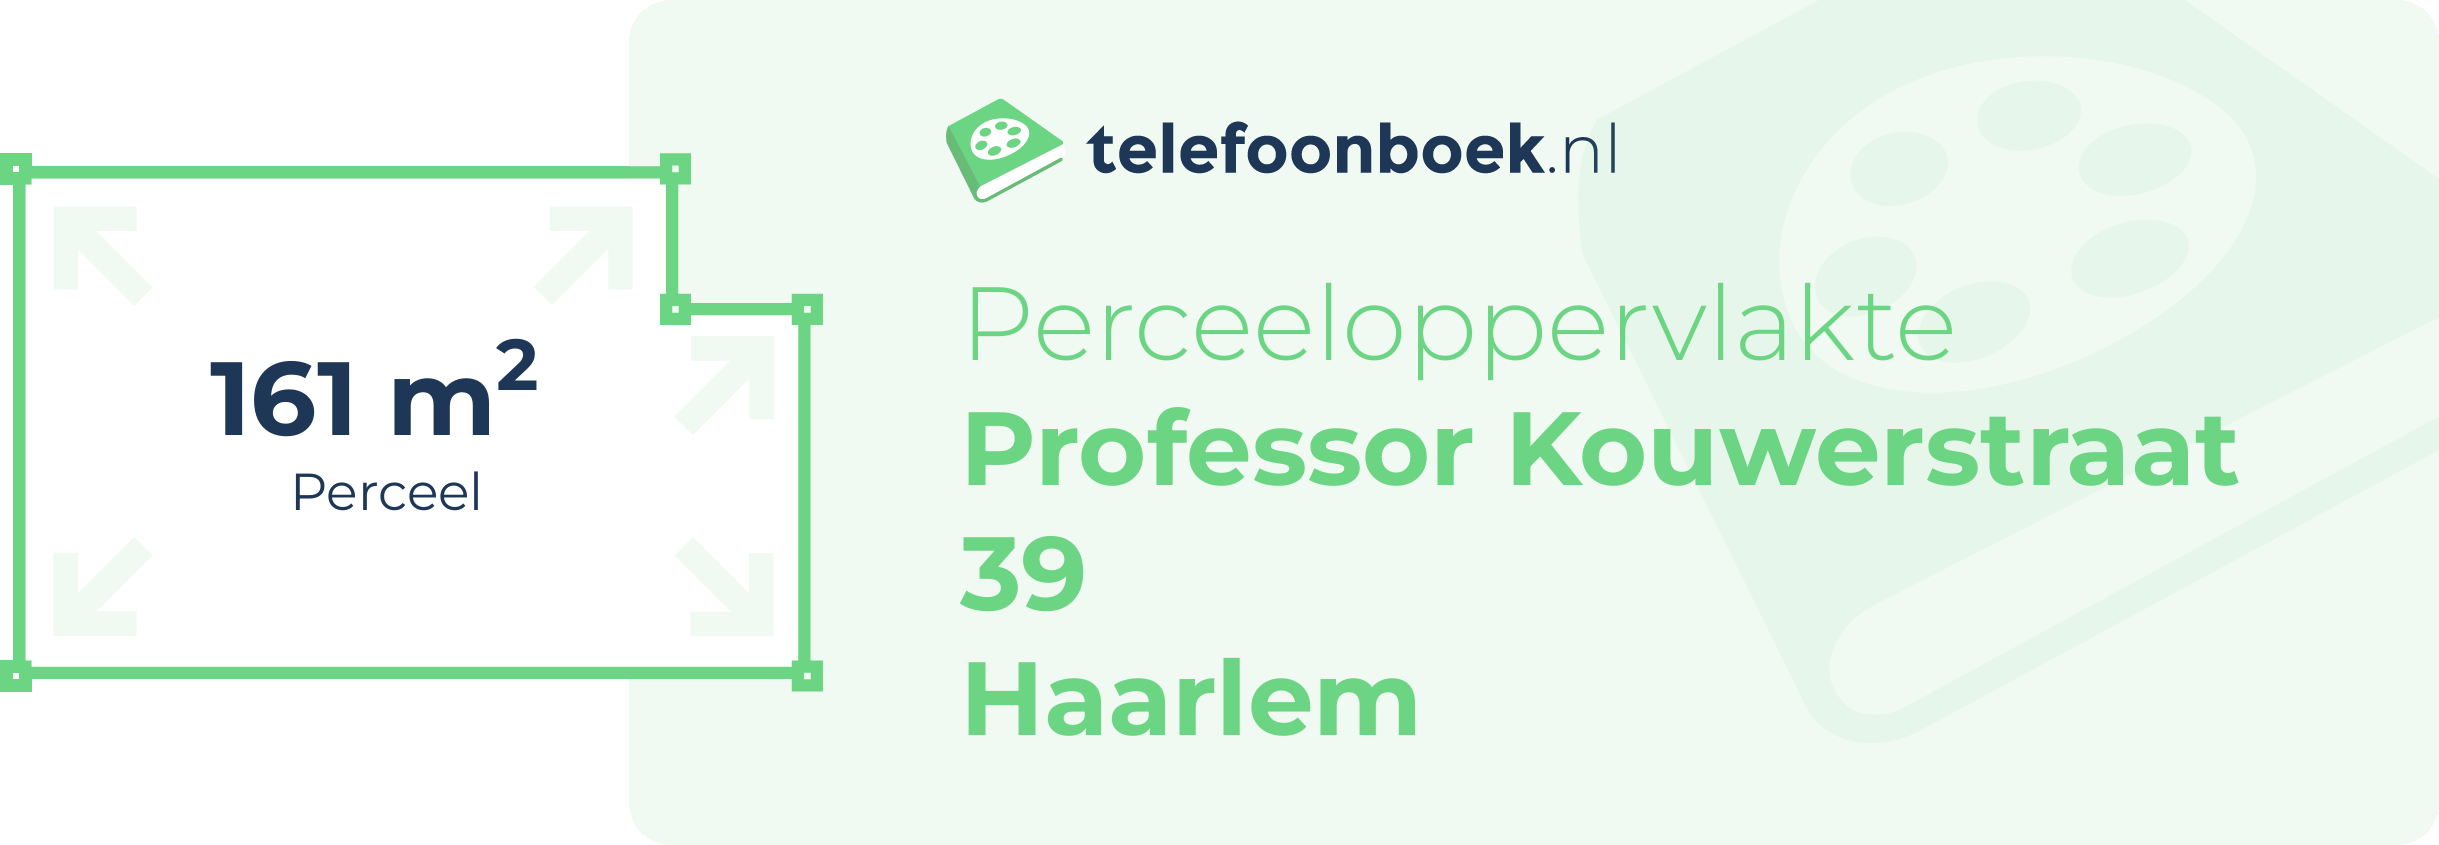 Perceeloppervlakte Professor Kouwerstraat 39 Haarlem